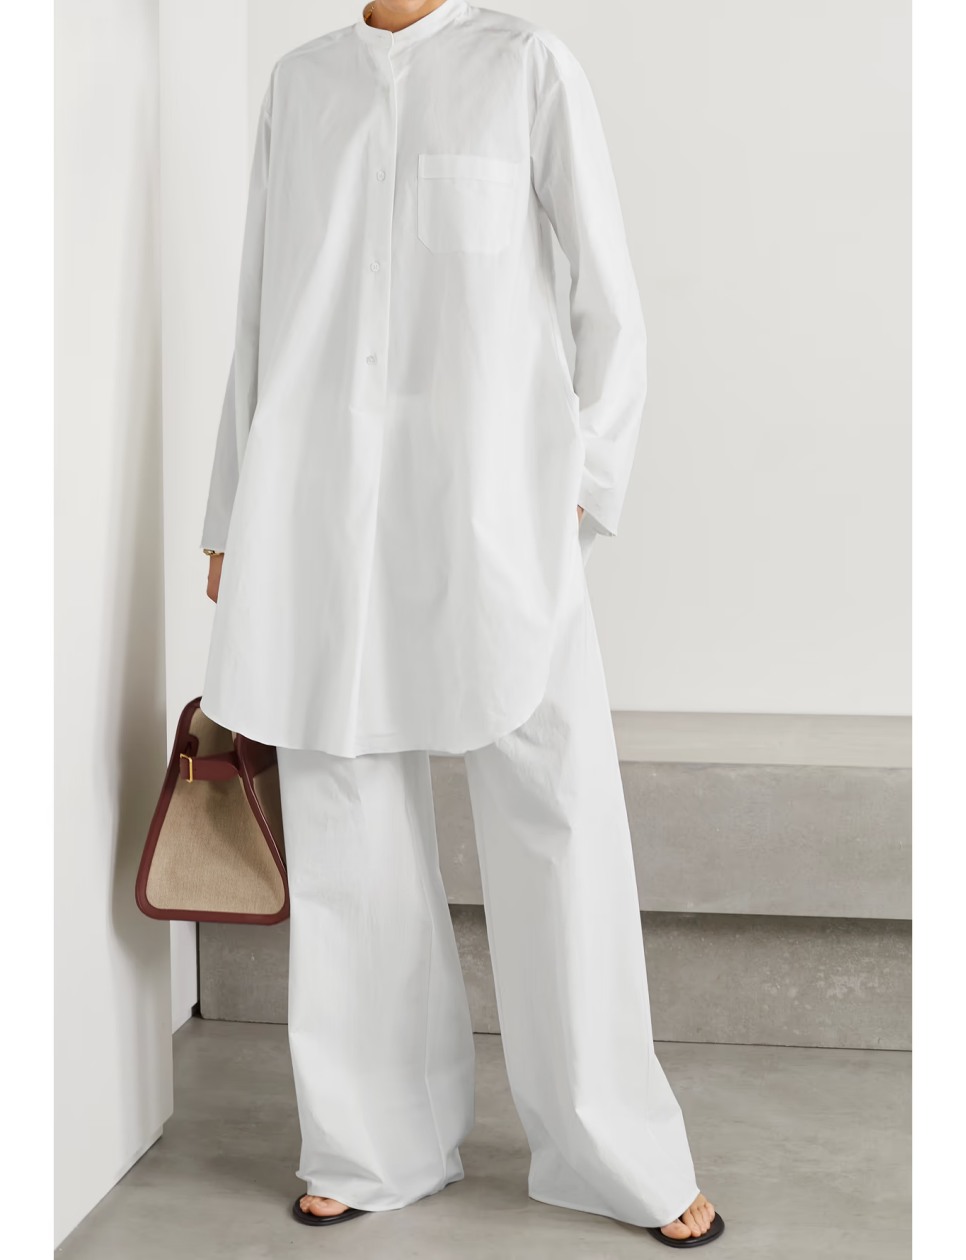 Outfit serba putih untuk Lebaran